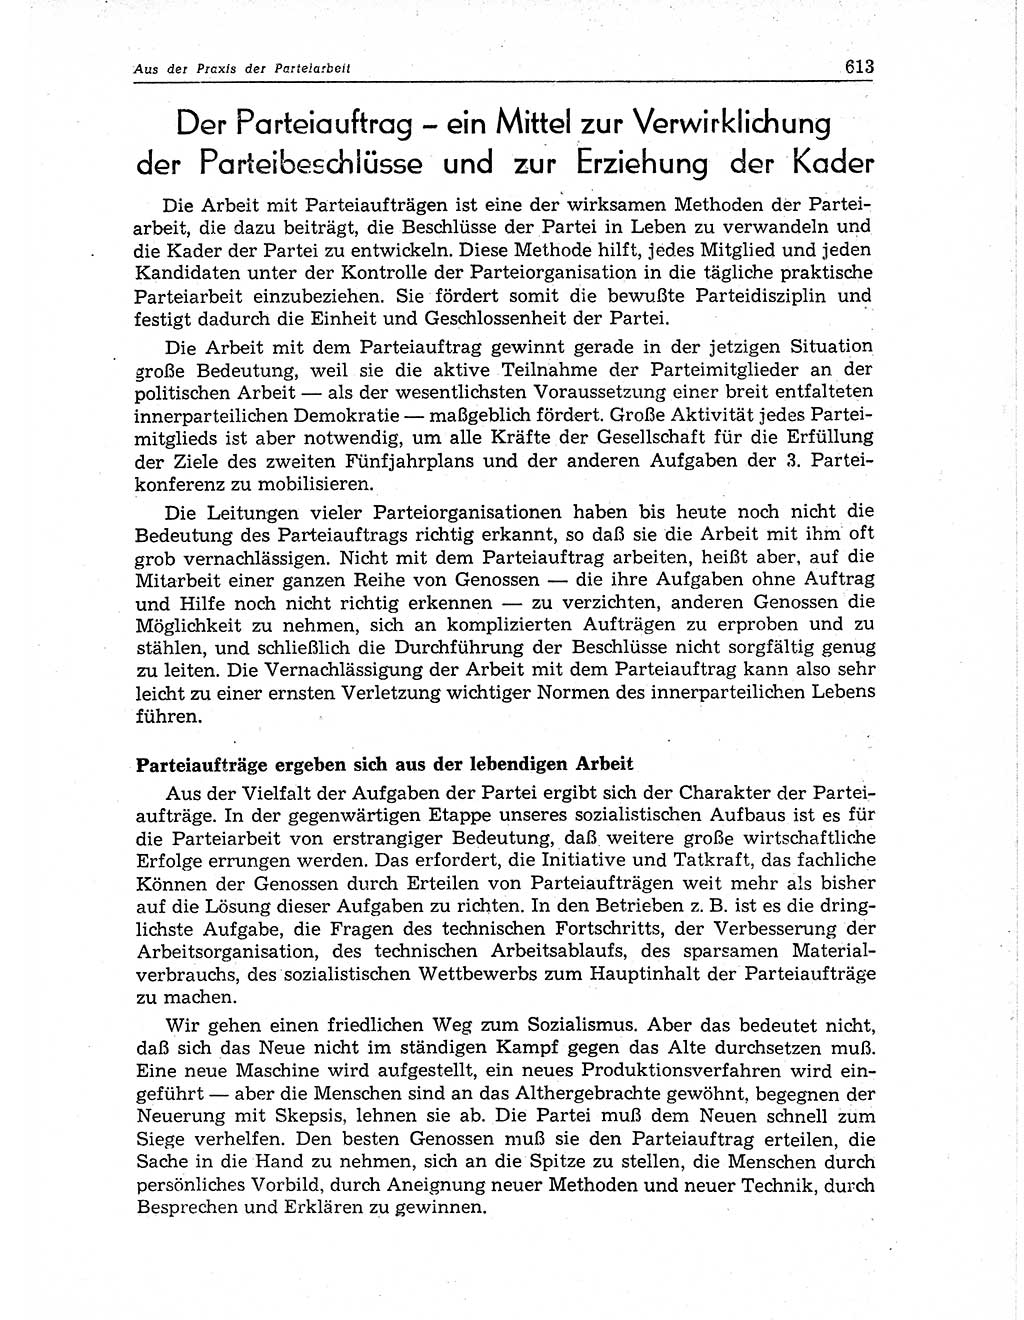 Neuer Weg (NW), Organ des Zentralkomitees (ZK) der SED (Sozialistische Einheitspartei Deutschlands) für Fragen des Parteiaufbaus und des Parteilebens, 11. Jahrgang [Deutsche Demokratische Republik (DDR)] 1956, Seite 613 (NW ZK SED DDR 1956, S. 613)